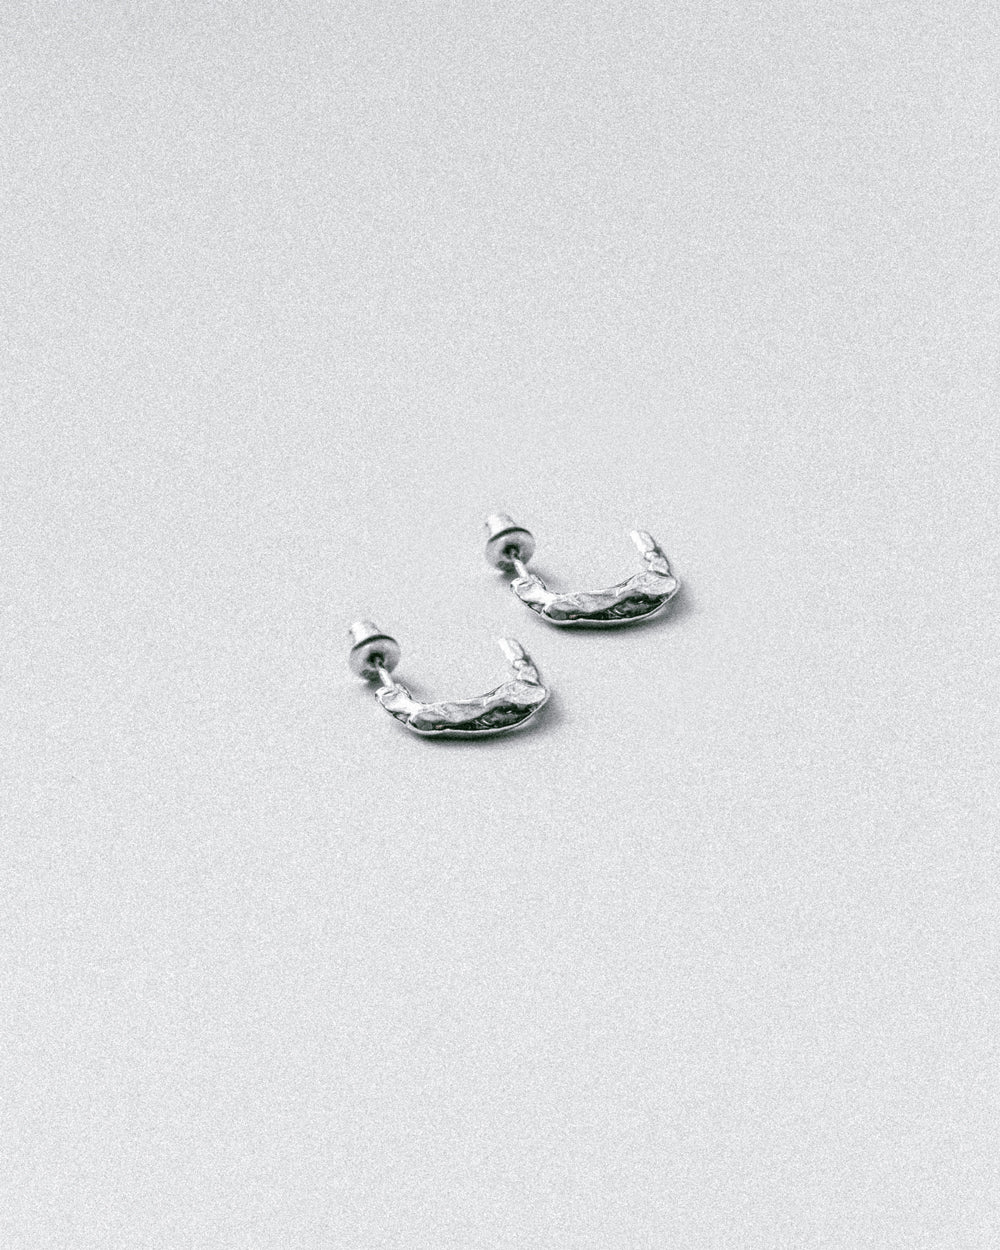 Sterling Silver Gatekeeper Earrings Edgy Art Fringe Handmade -    Earrings inspiration, Sterling silver earring hooks, Photo jewelry